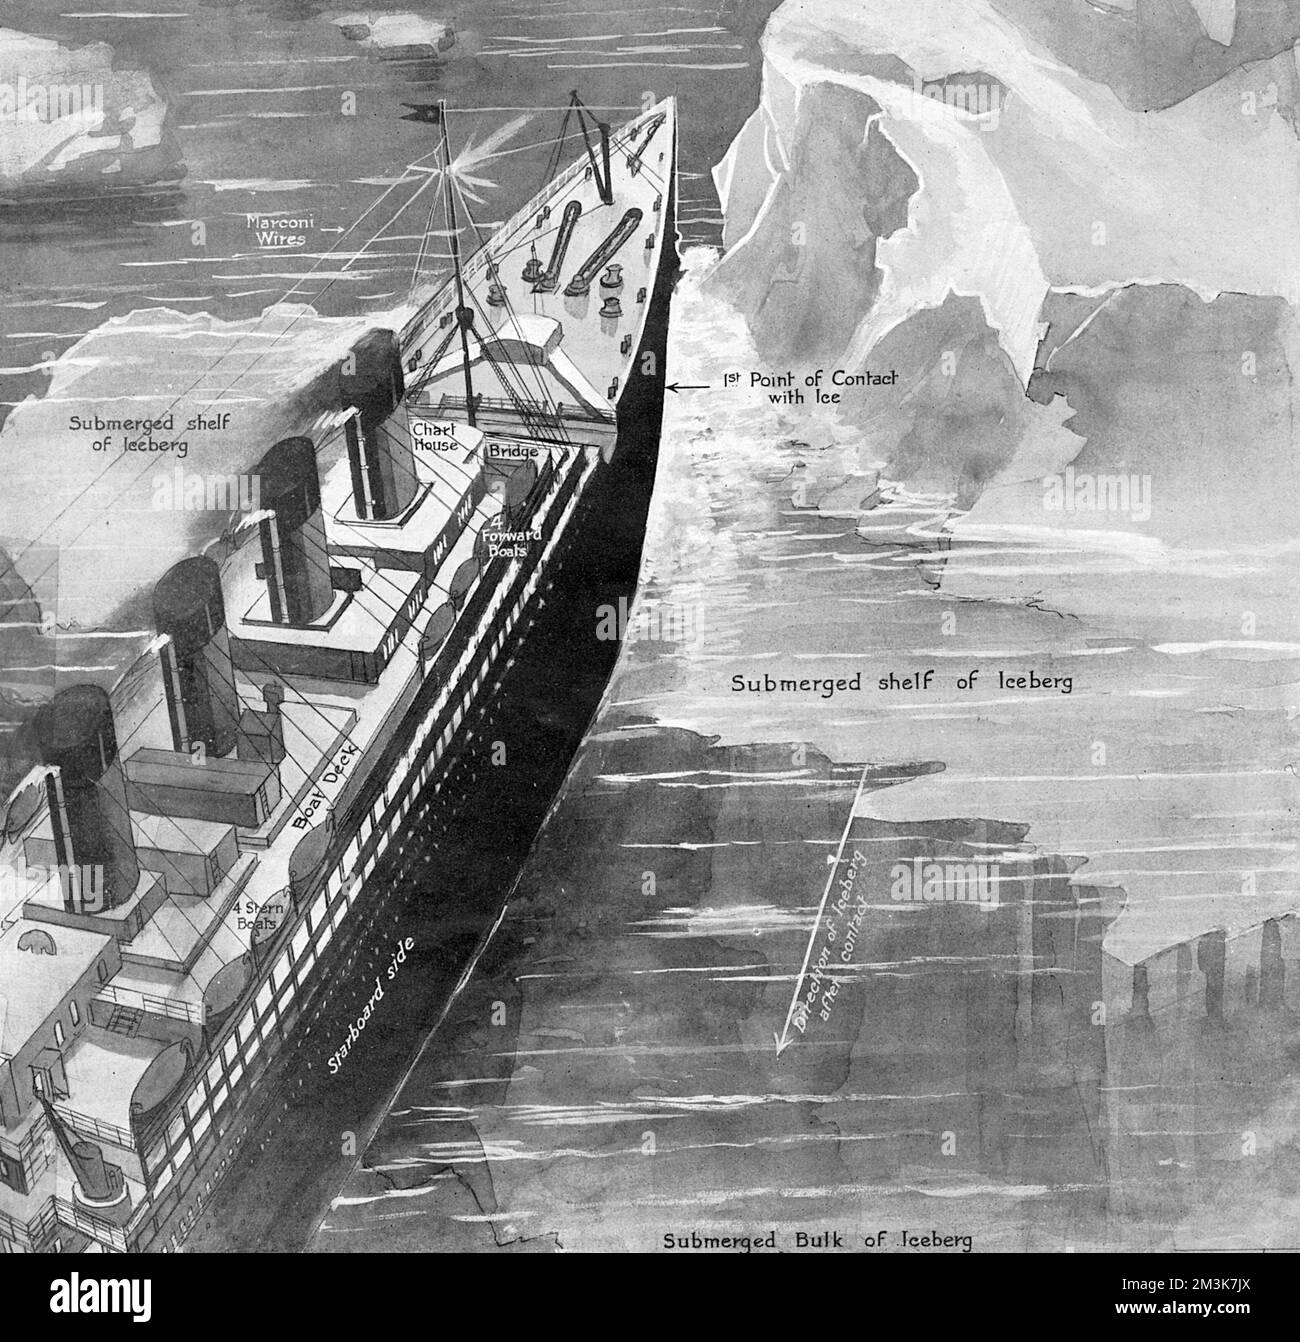 Un'illustrazione raffigurante il momento in cui il Titanic è entrato in contatto per la prima volta con l'iceberg. Data: 27th aprile 1912 Foto Stock